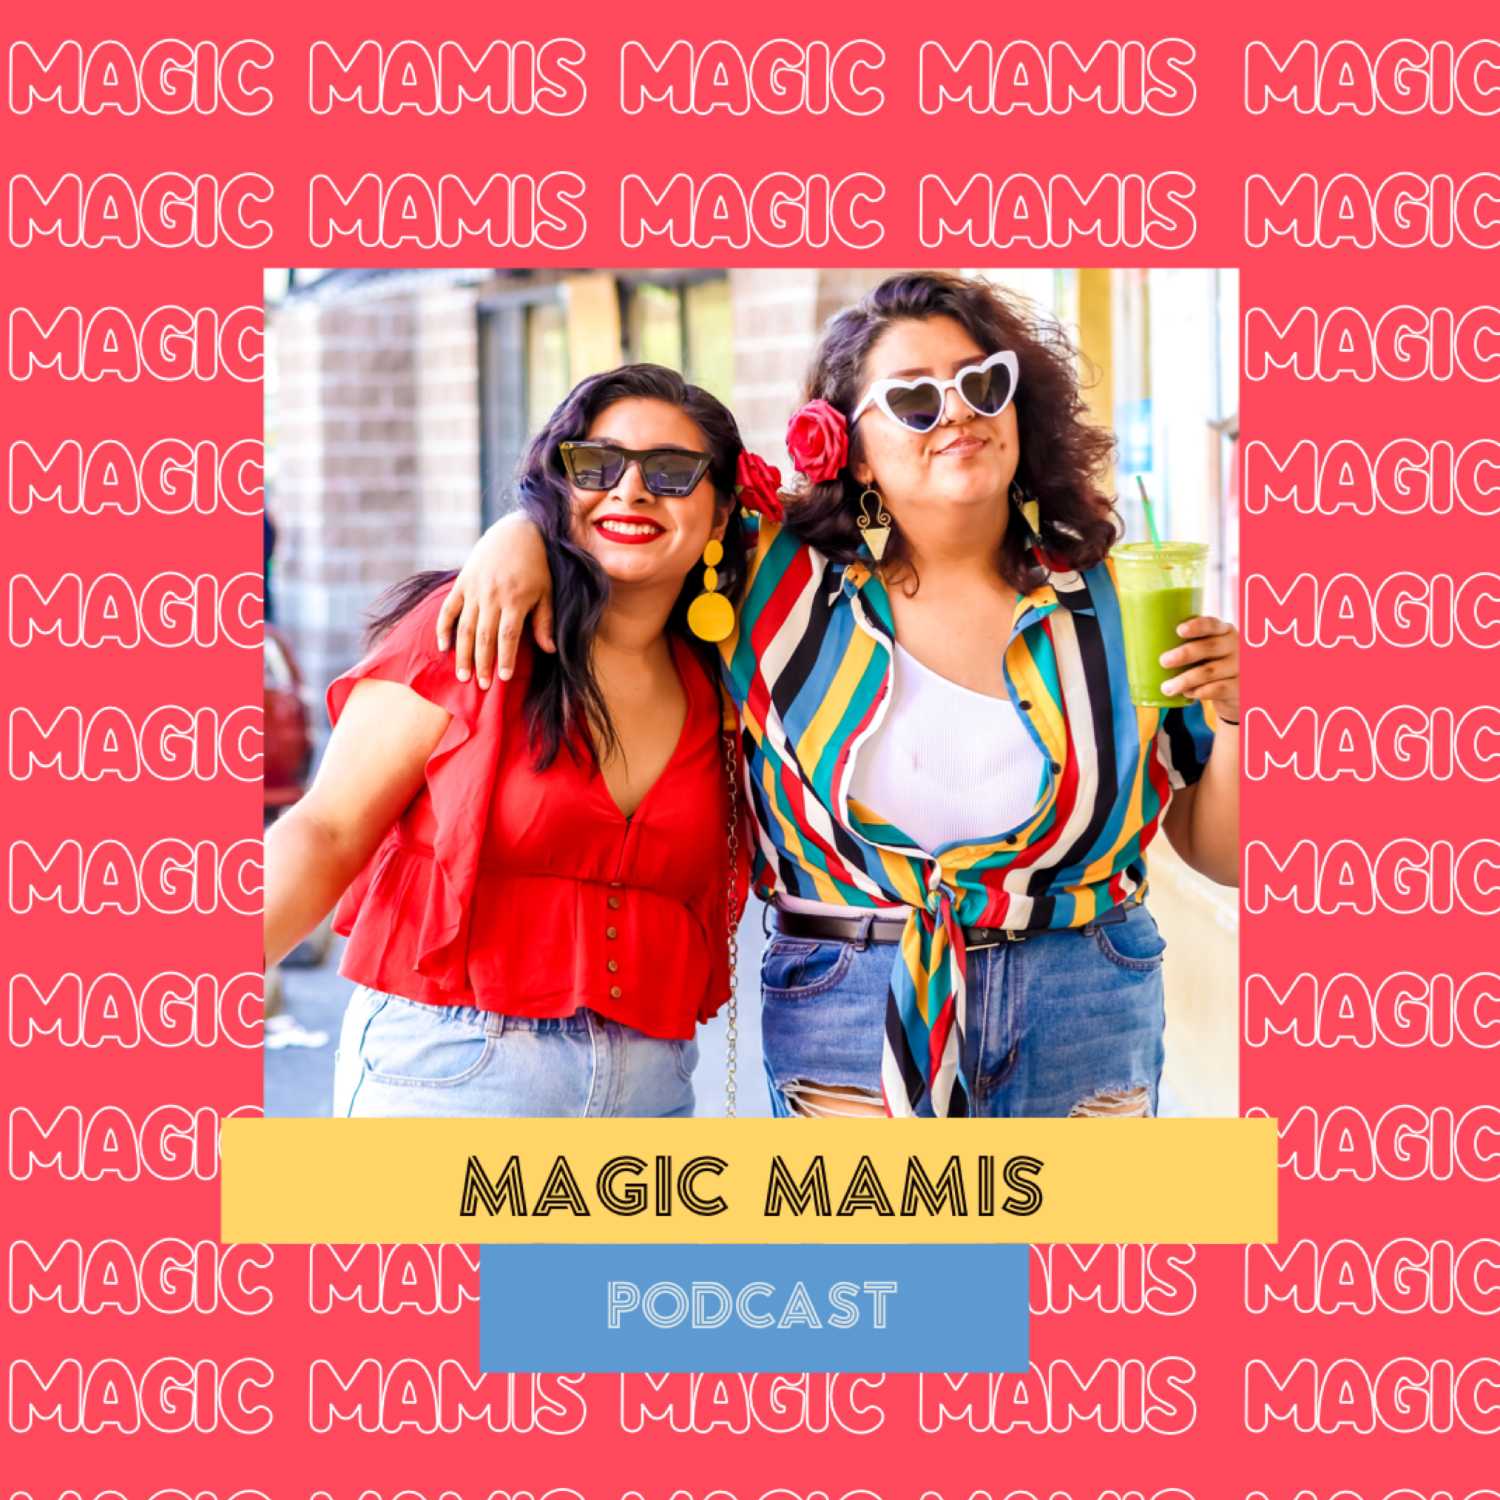 Magic Mamis Podcast